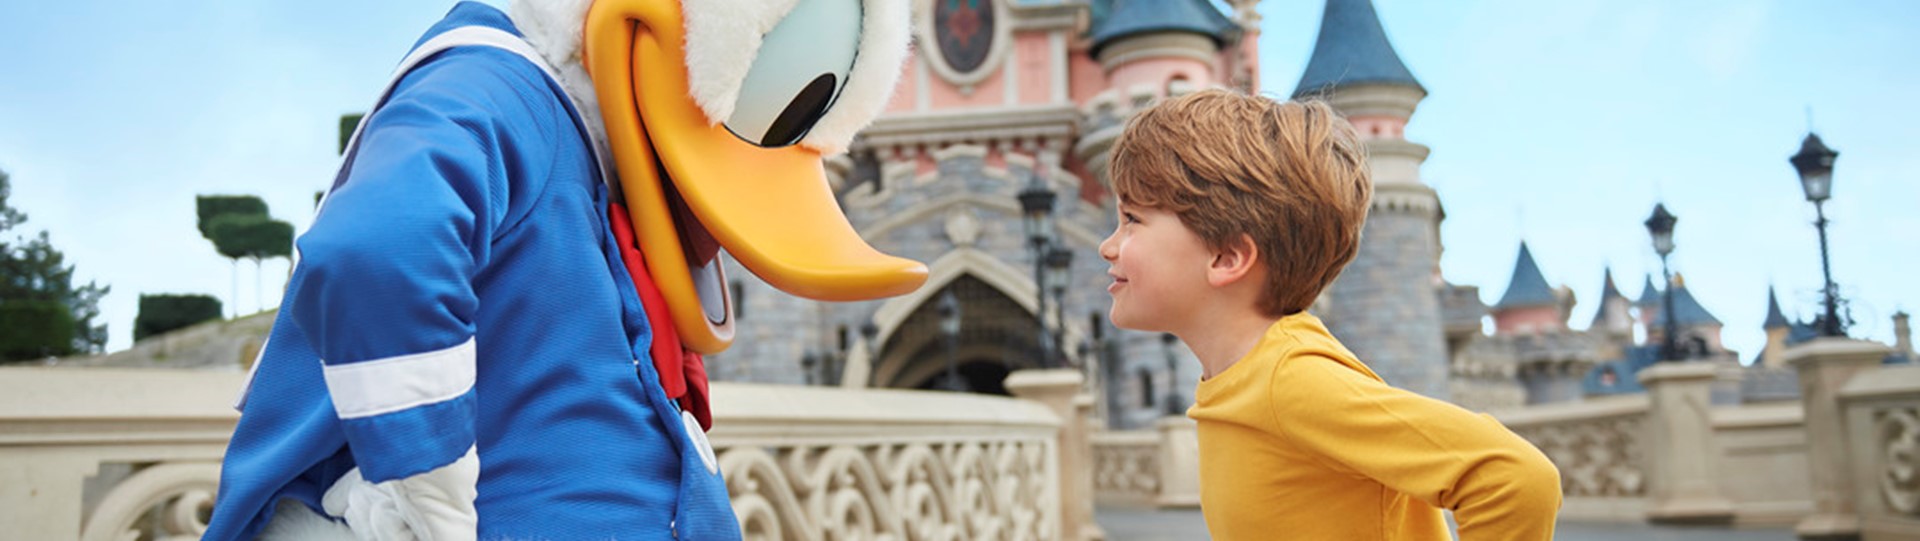 Maak je klaar voor een magische tijd in Disneyland® Paris